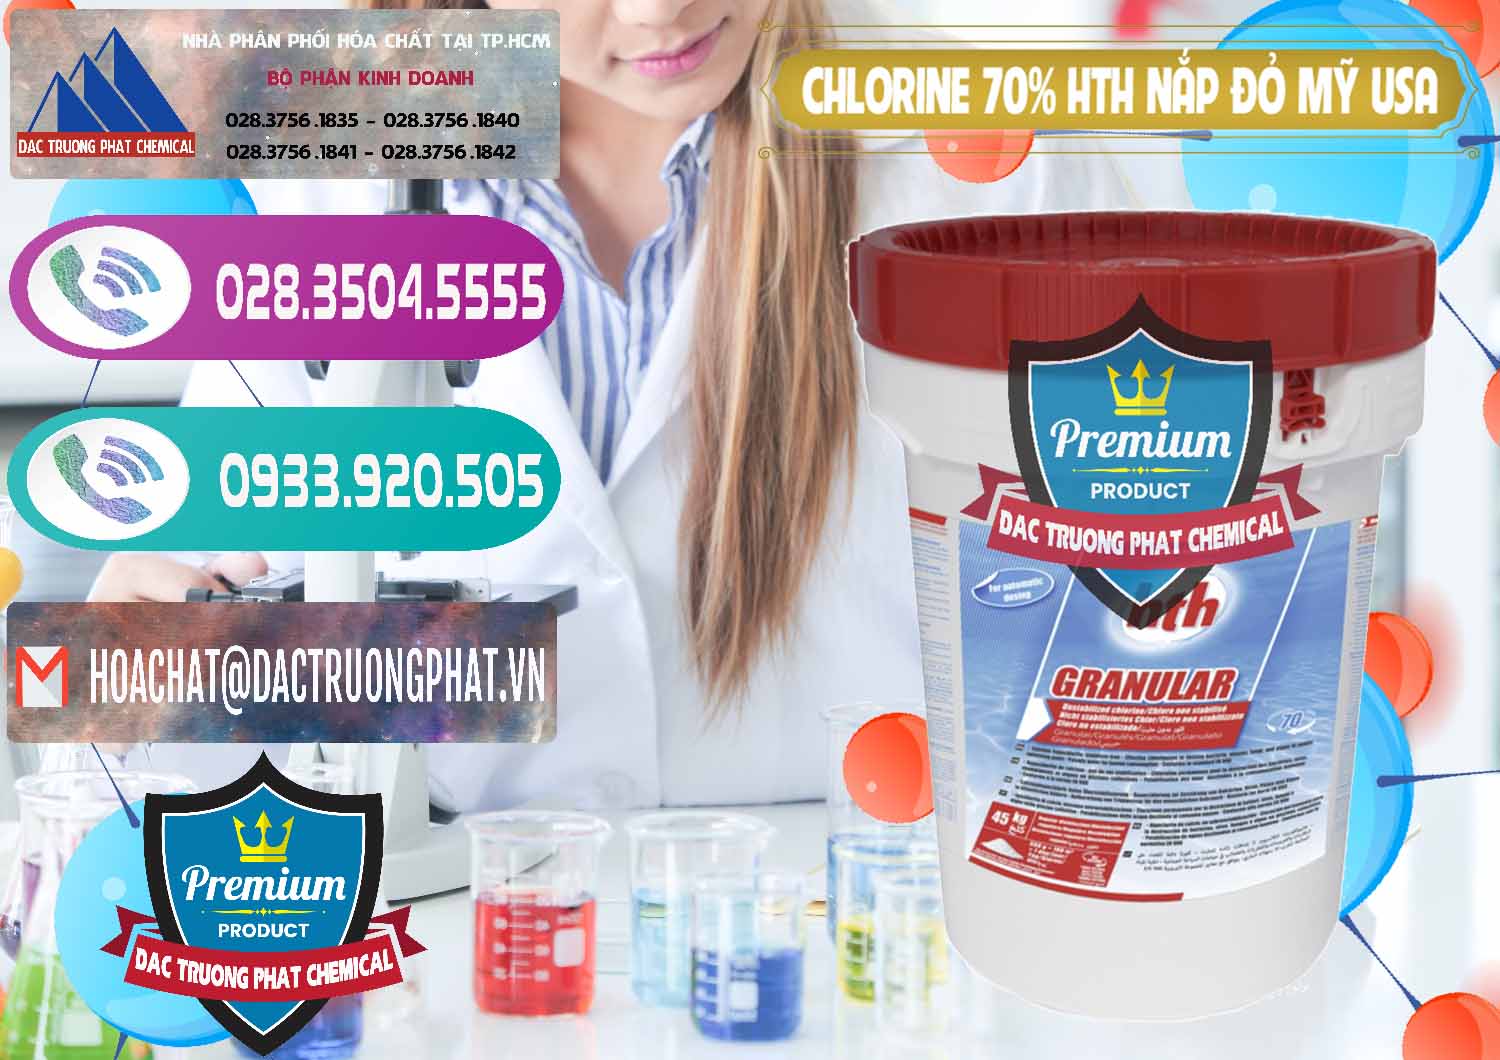 Chuyên bán _ cung cấp Clorin – Chlorine 70% HTH Nắp Đỏ Mỹ Usa - 0244 - Công ty nhập khẩu - phân phối hóa chất tại TP.HCM - hoachatxulynuoc.com